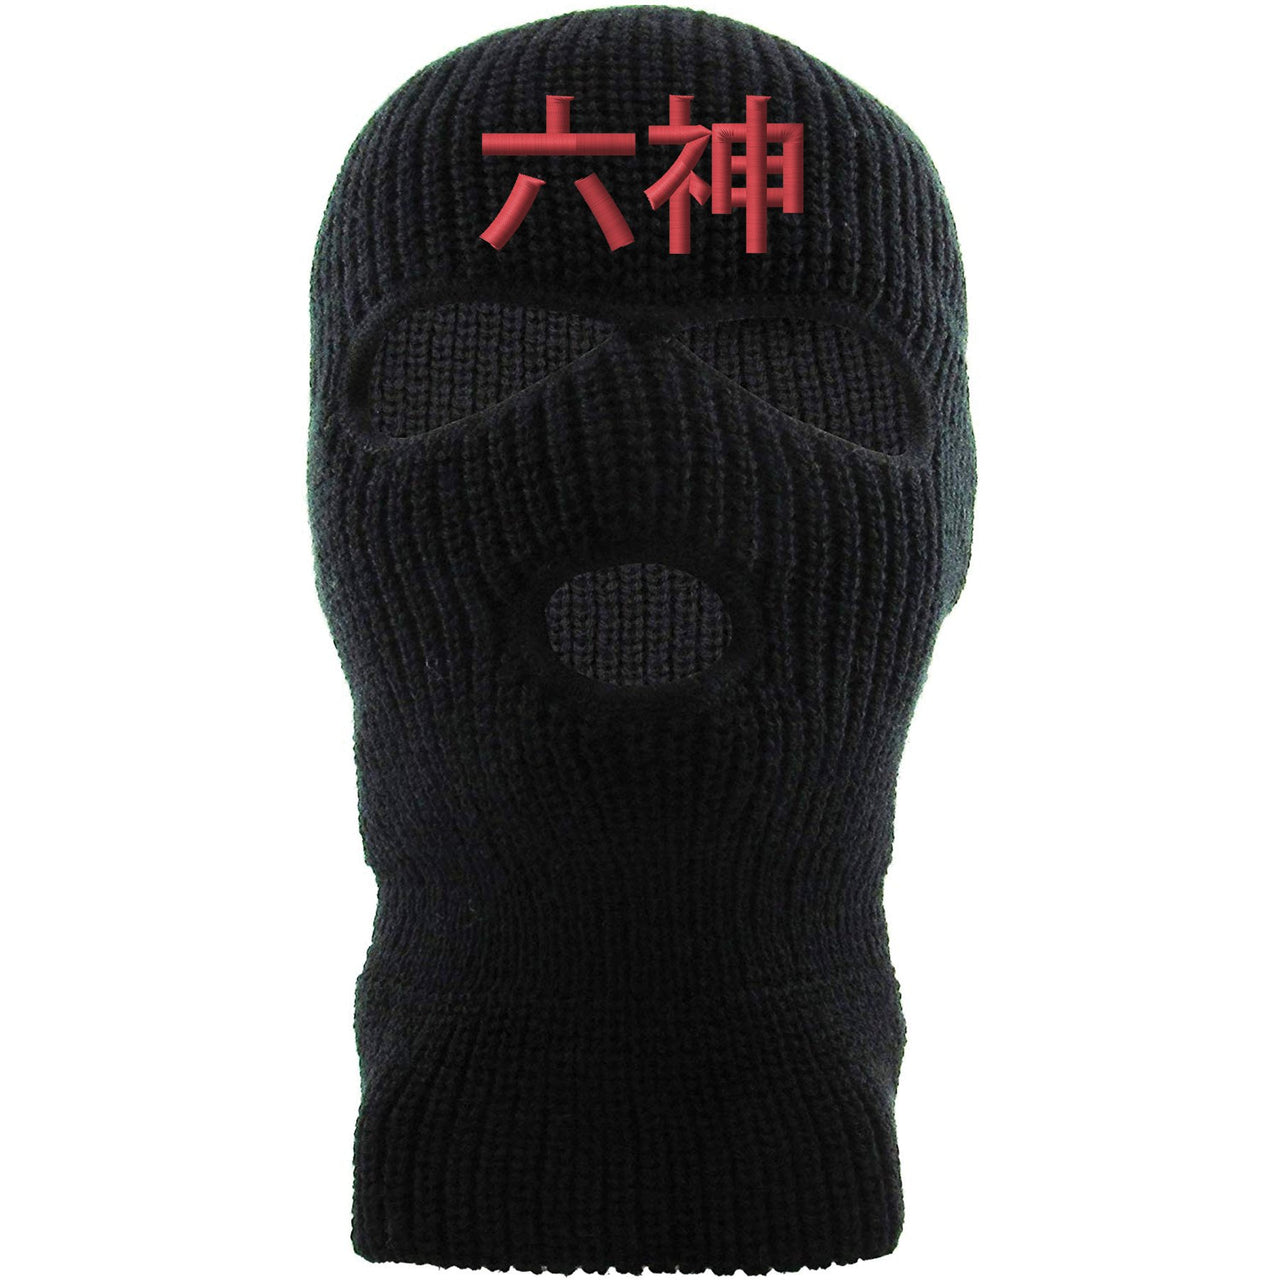 Infrared 6s Ski Mask | 6 God Chinese, Black